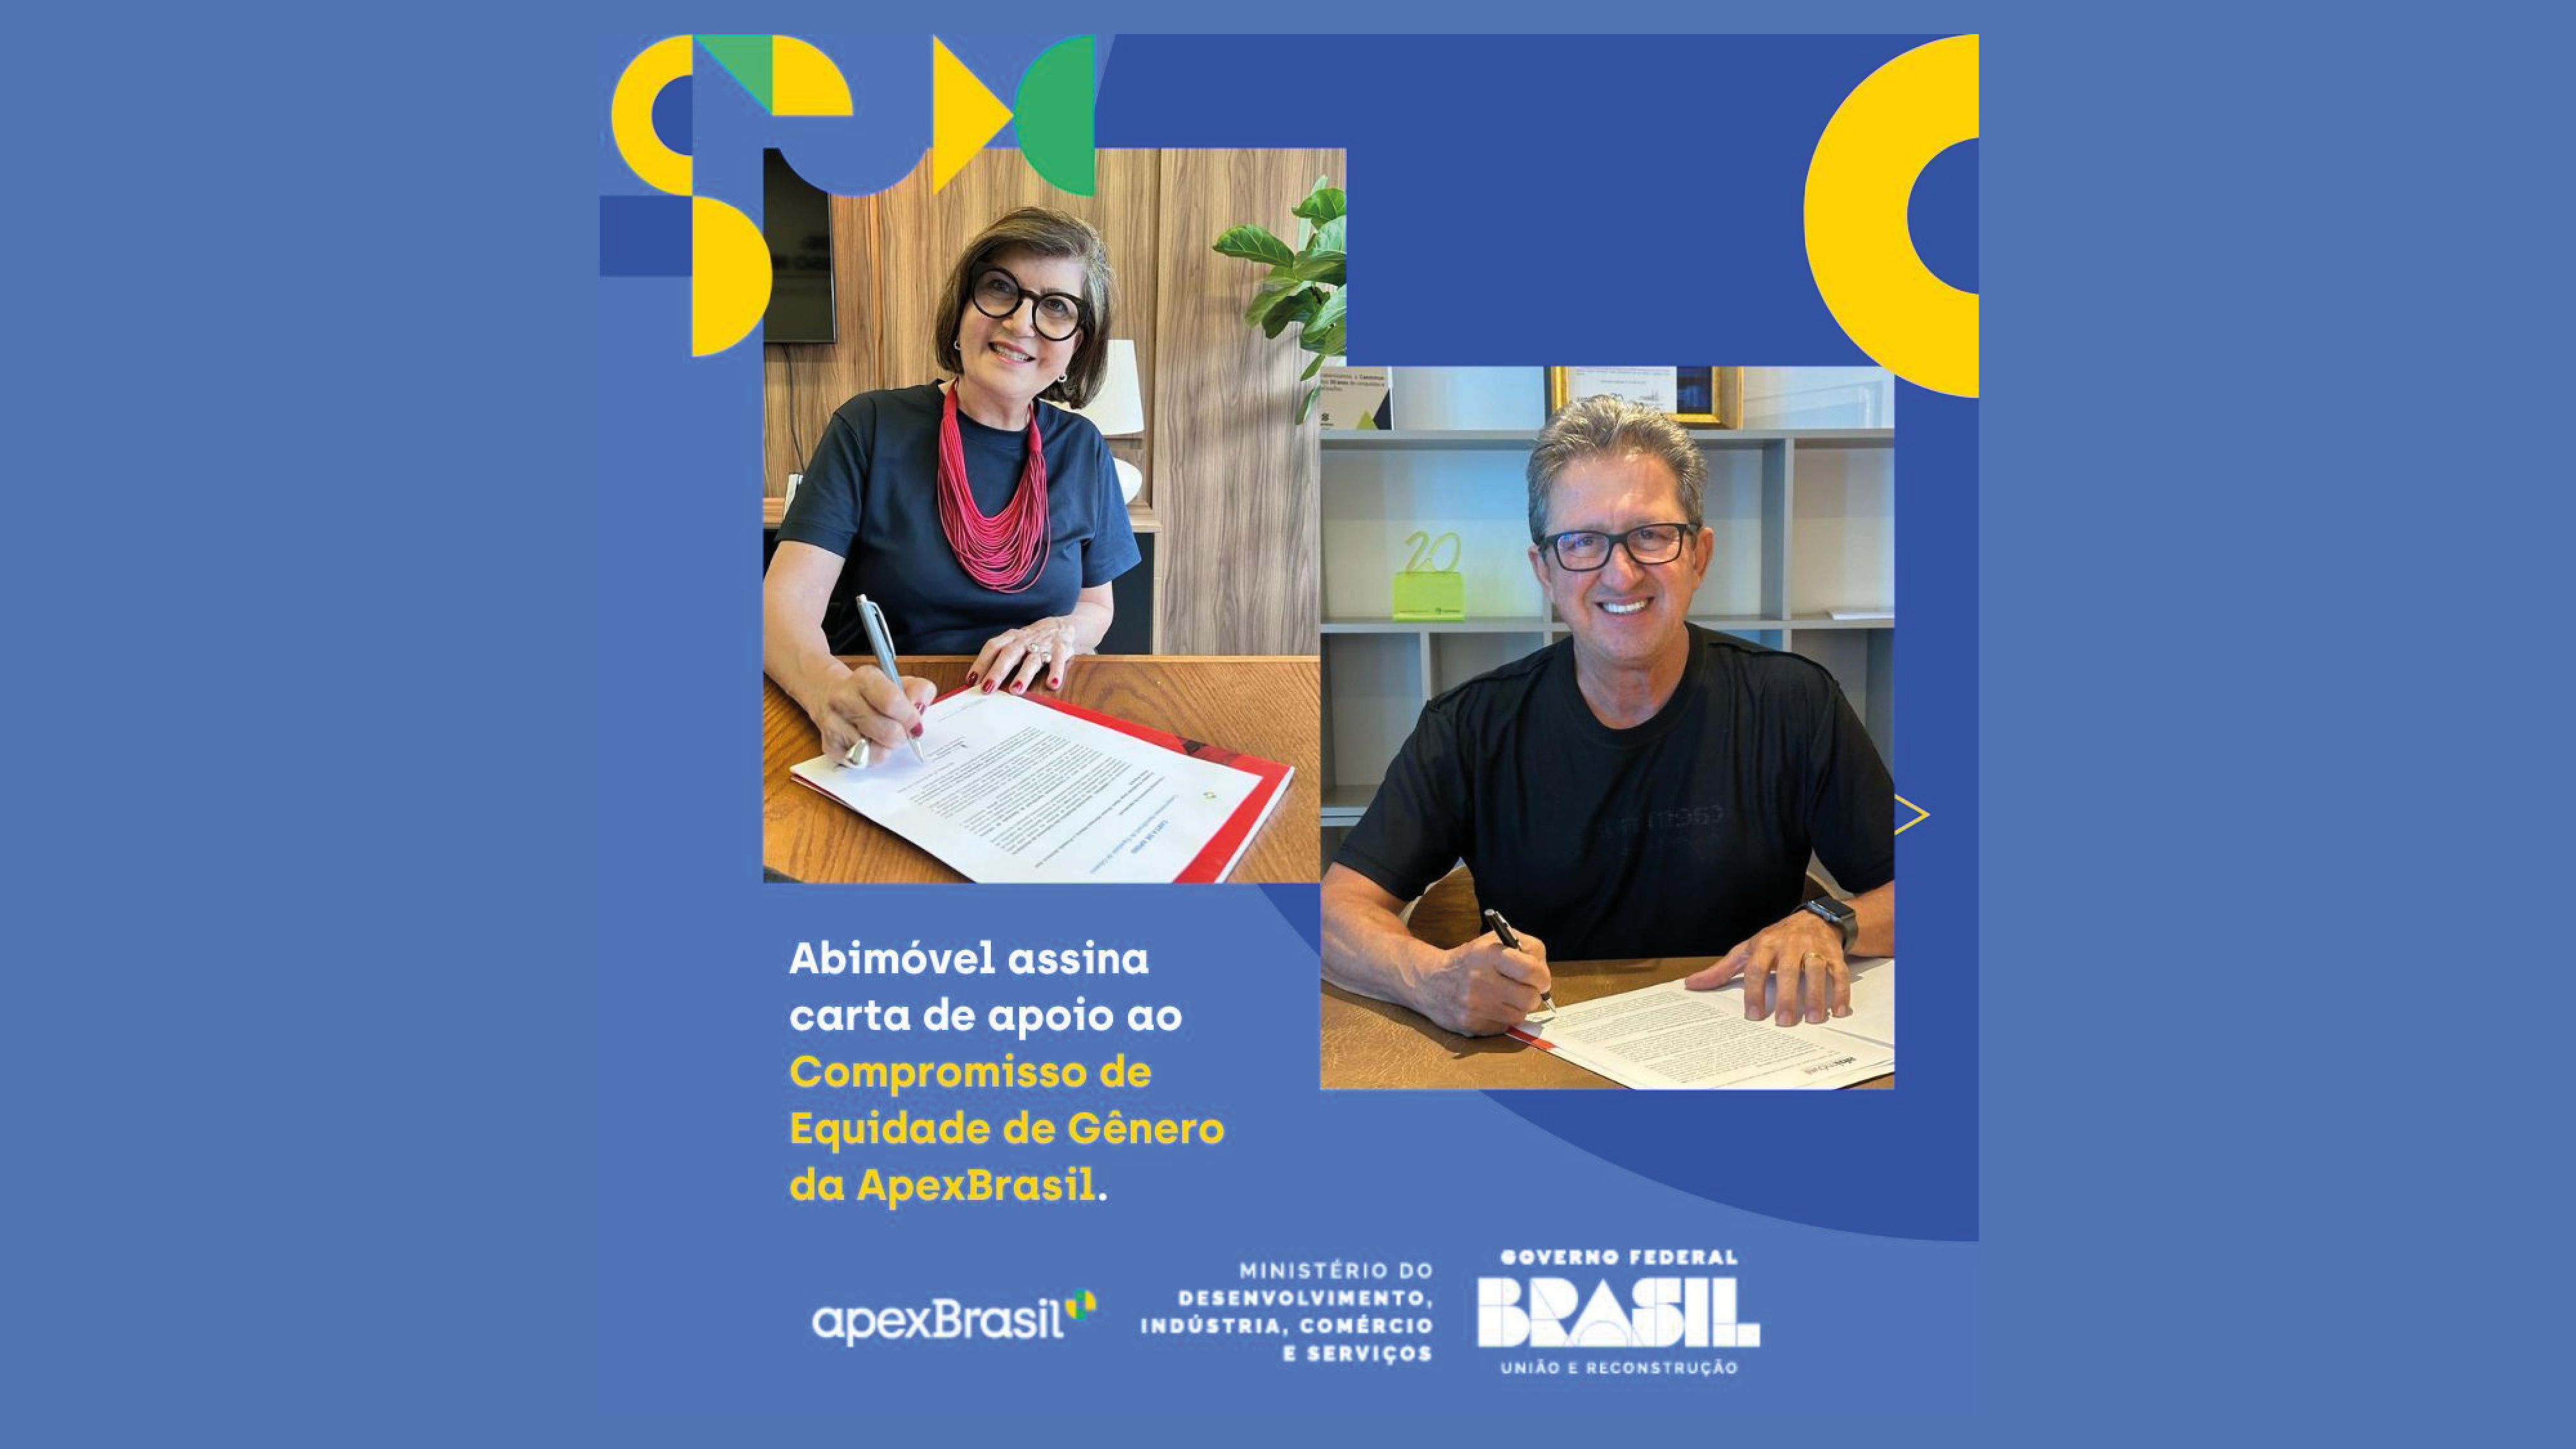 ABIMÓVEL é primeira entidade setorial a assinar ‘Compromisso de Equidade de Gênero’ da ApexBrasil